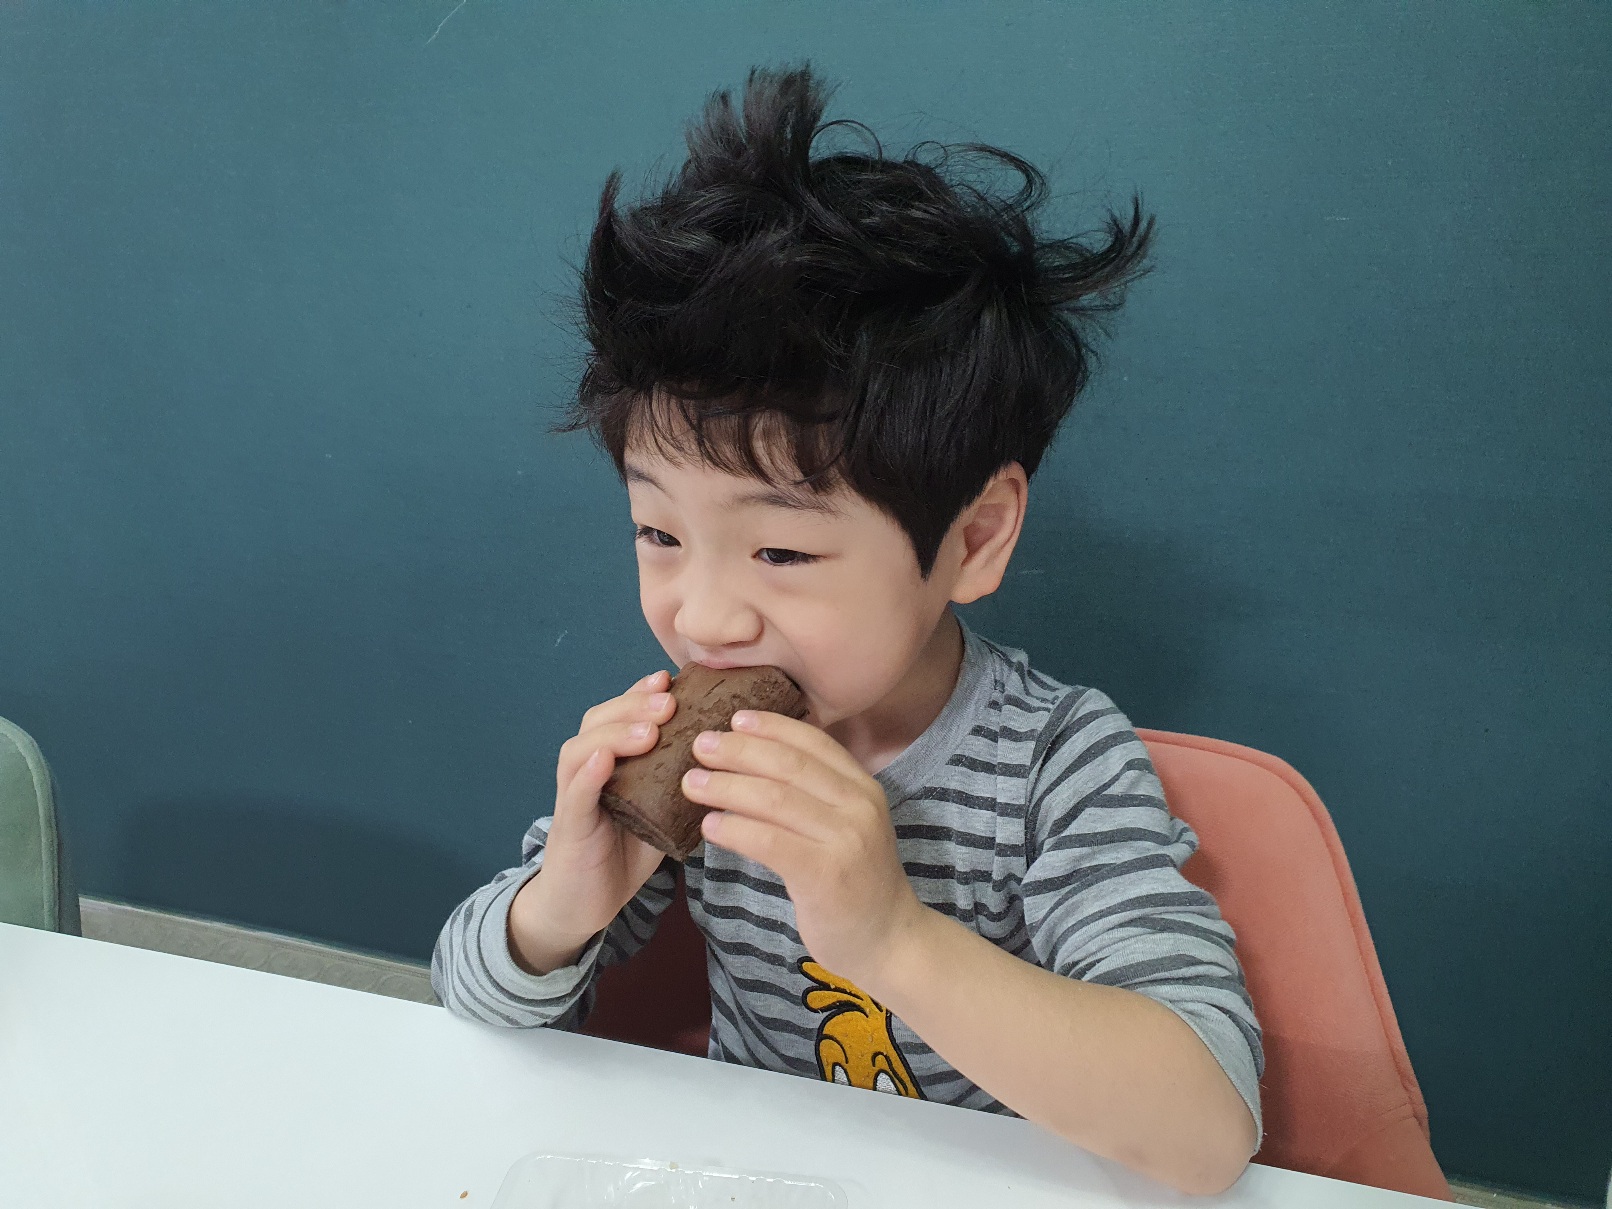 한아이가 부시시한 머리로 빵을 먹고있다